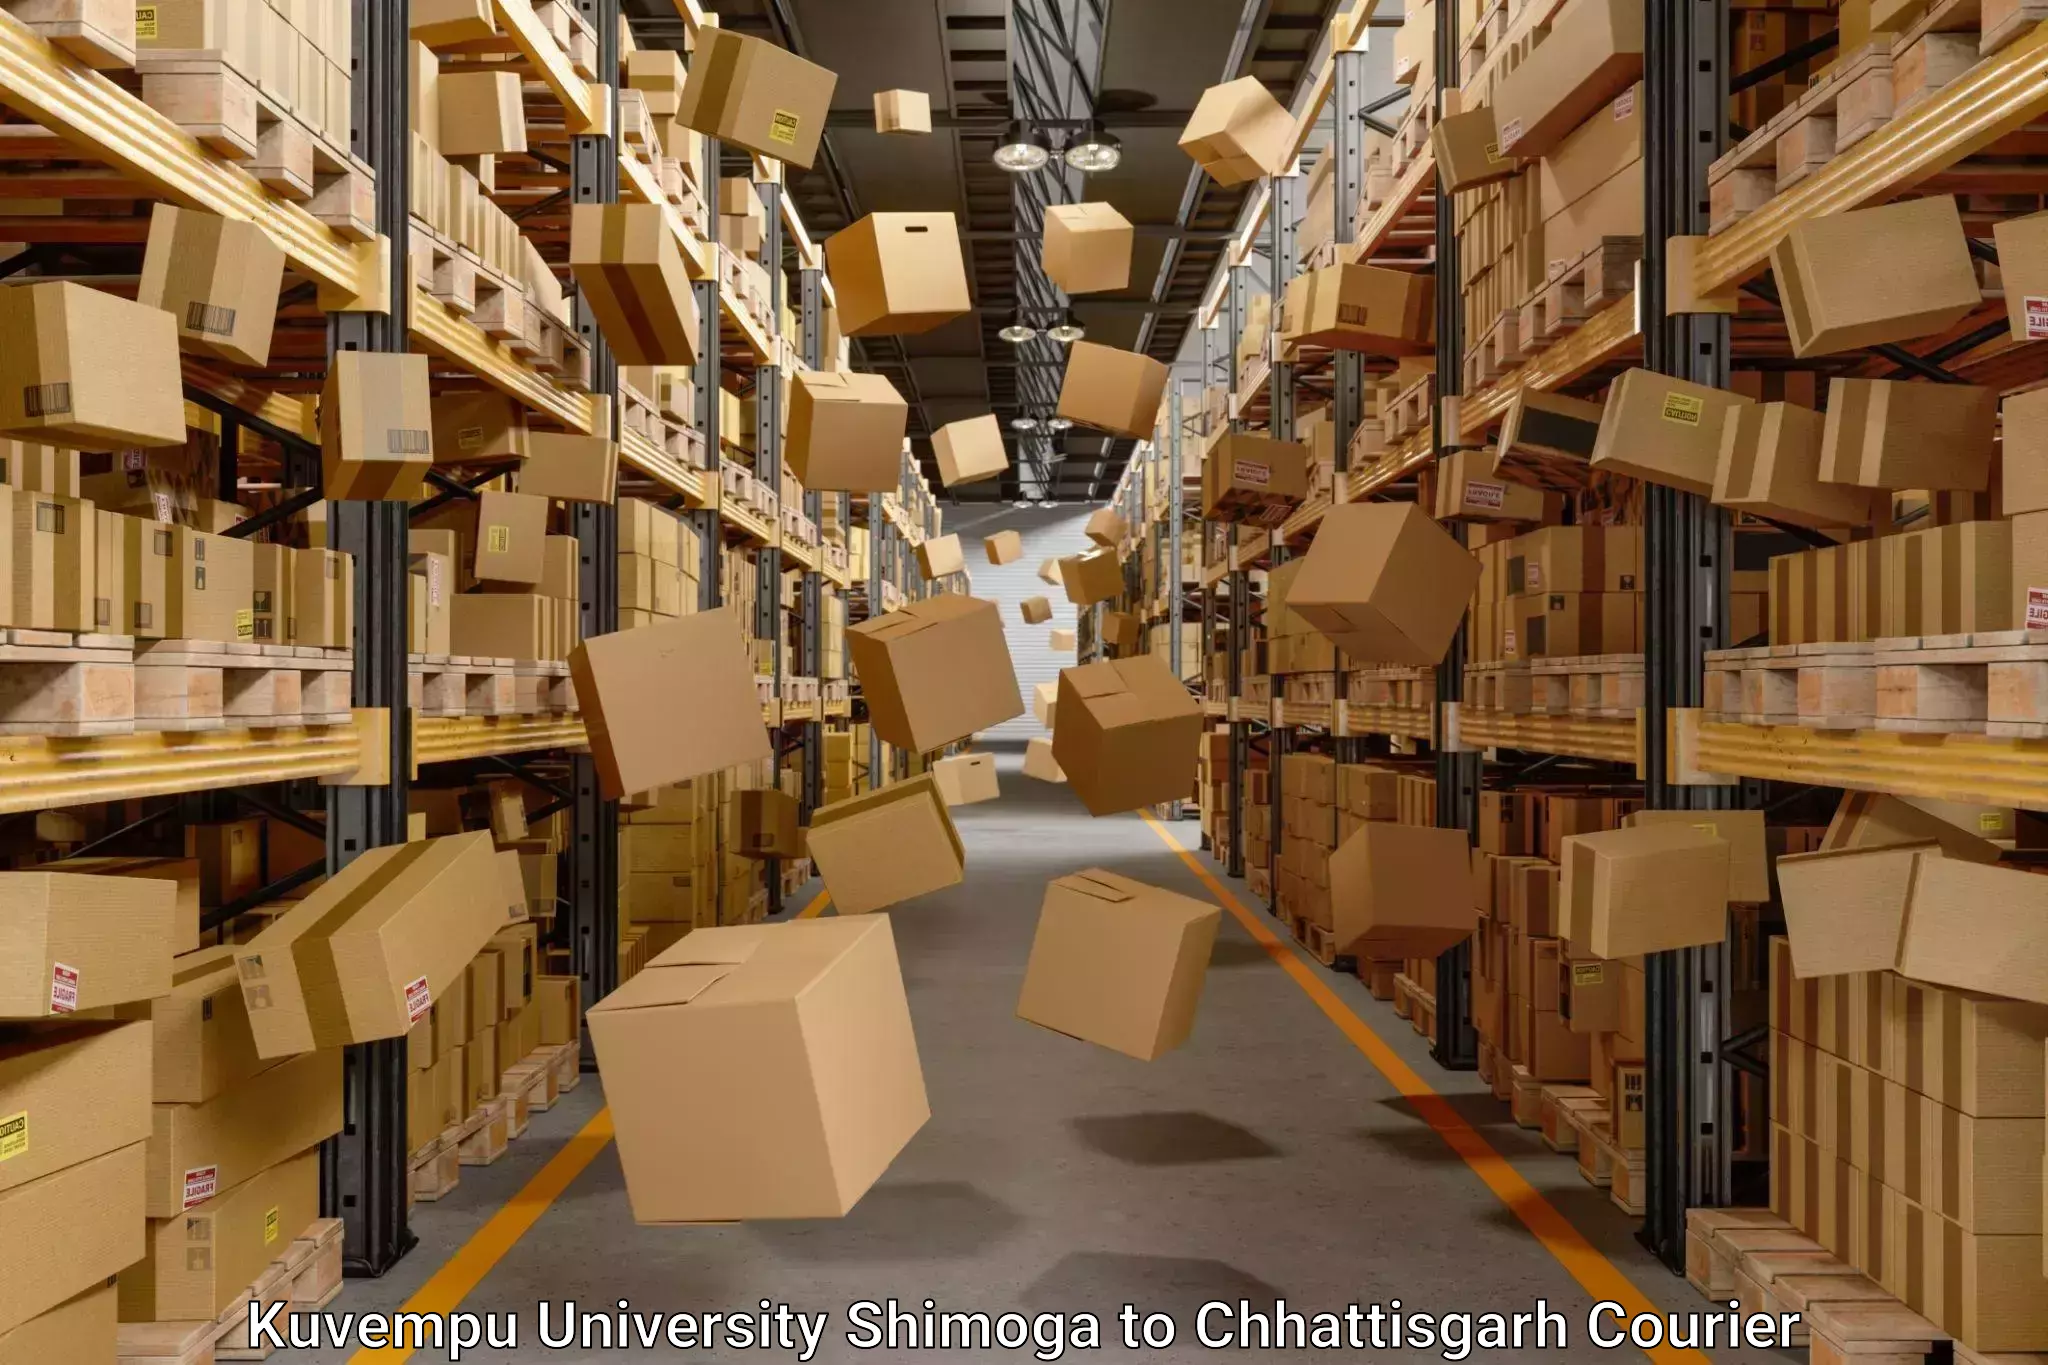 Expert moving and storage Kuvempu University Shimoga to Bijapur Chhattisgarh